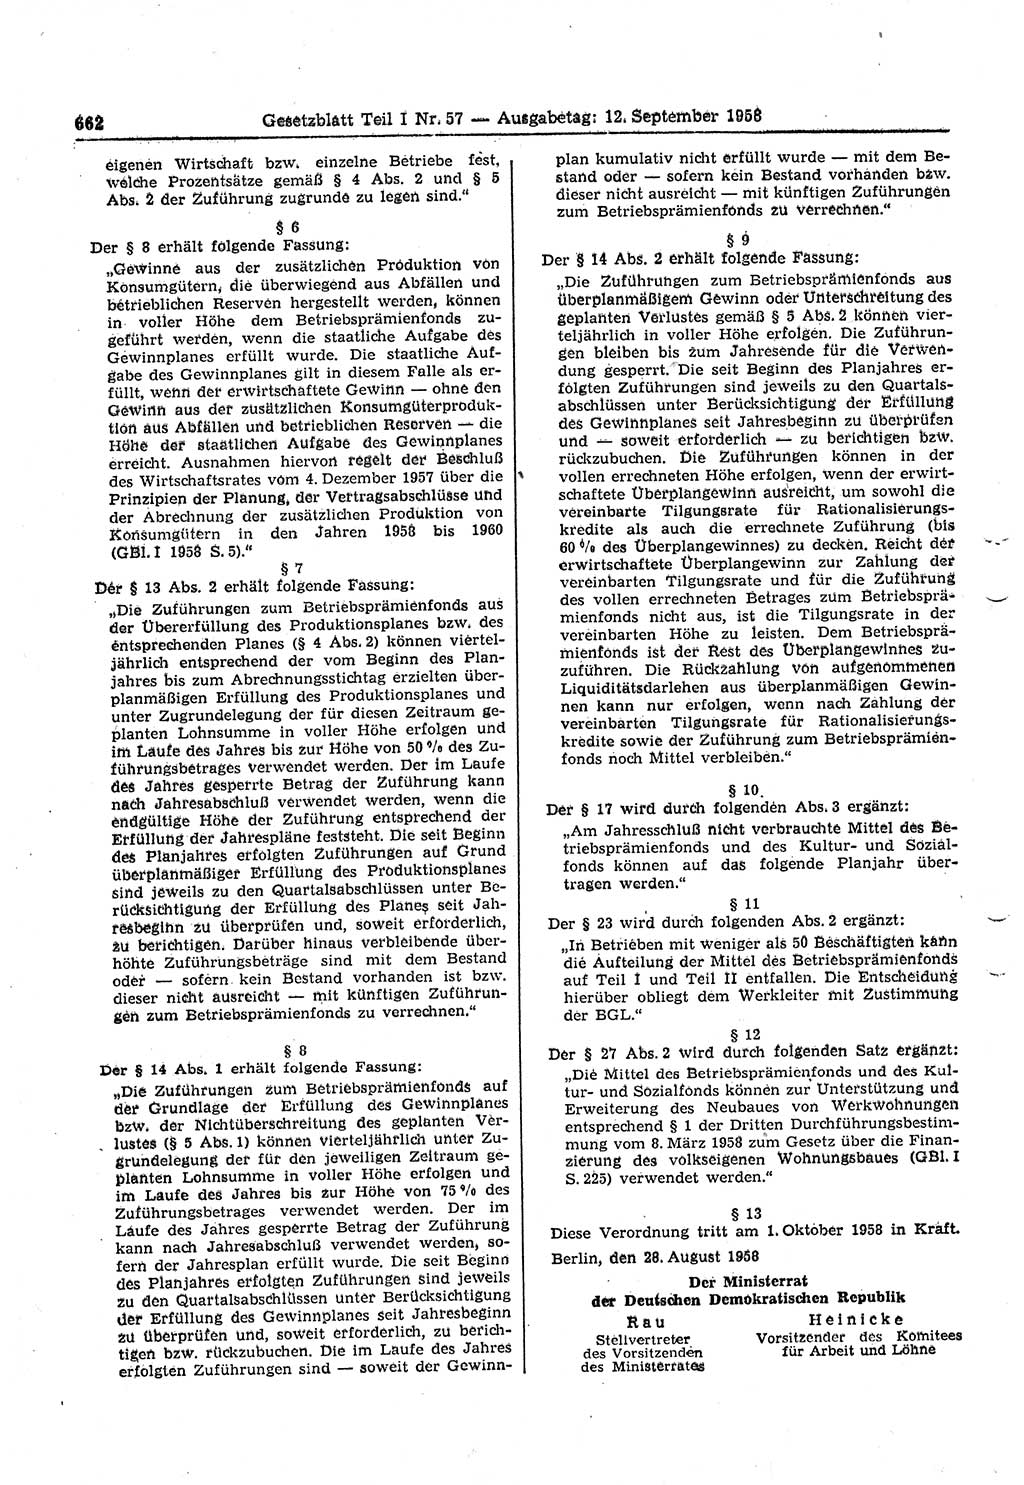 Gesetzblatt (GBl.) der Deutschen Demokratischen Republik (DDR) Teil Ⅰ 1958, Seite 662 (GBl. DDR Ⅰ 1958, S. 662)